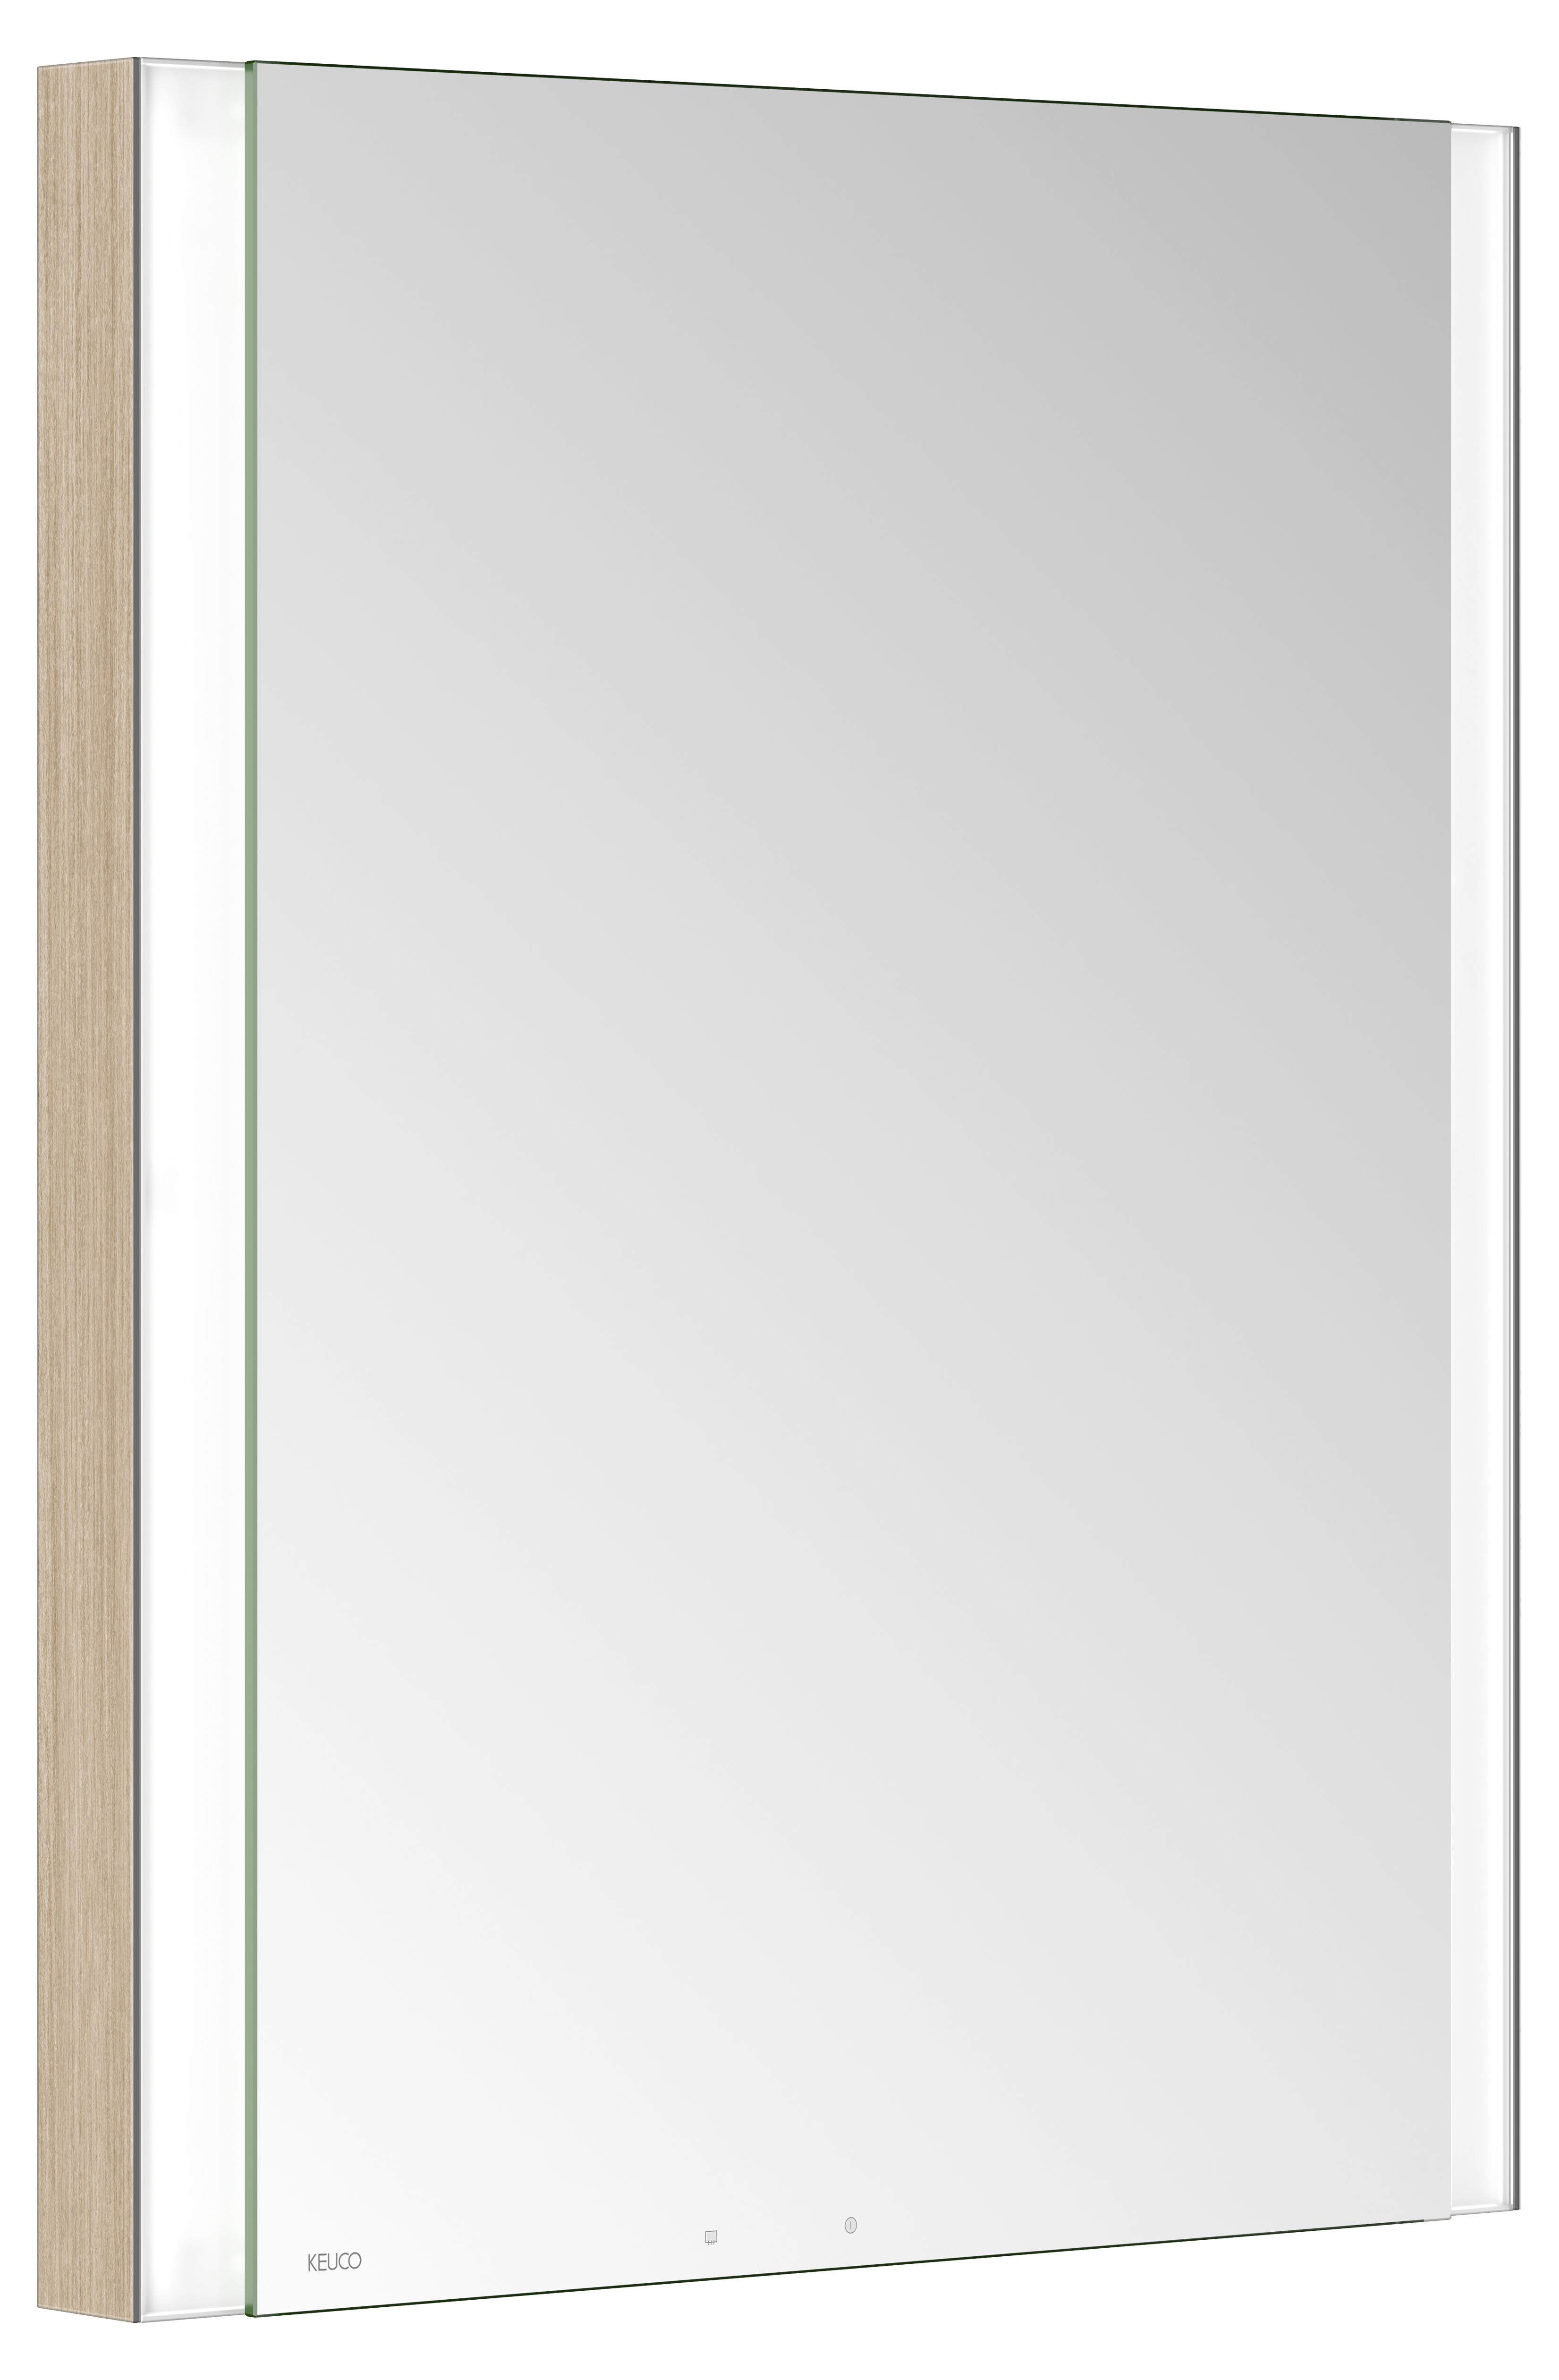 Левый зеркальный шкаф с подсветкой и подогревом для встраиваемого монтажа KEUCO Somaris 14511 851201 115 мм х 600 мм х 710 мм, с 1 поворотной дверцей, цвет корпуса под Светлый дуб